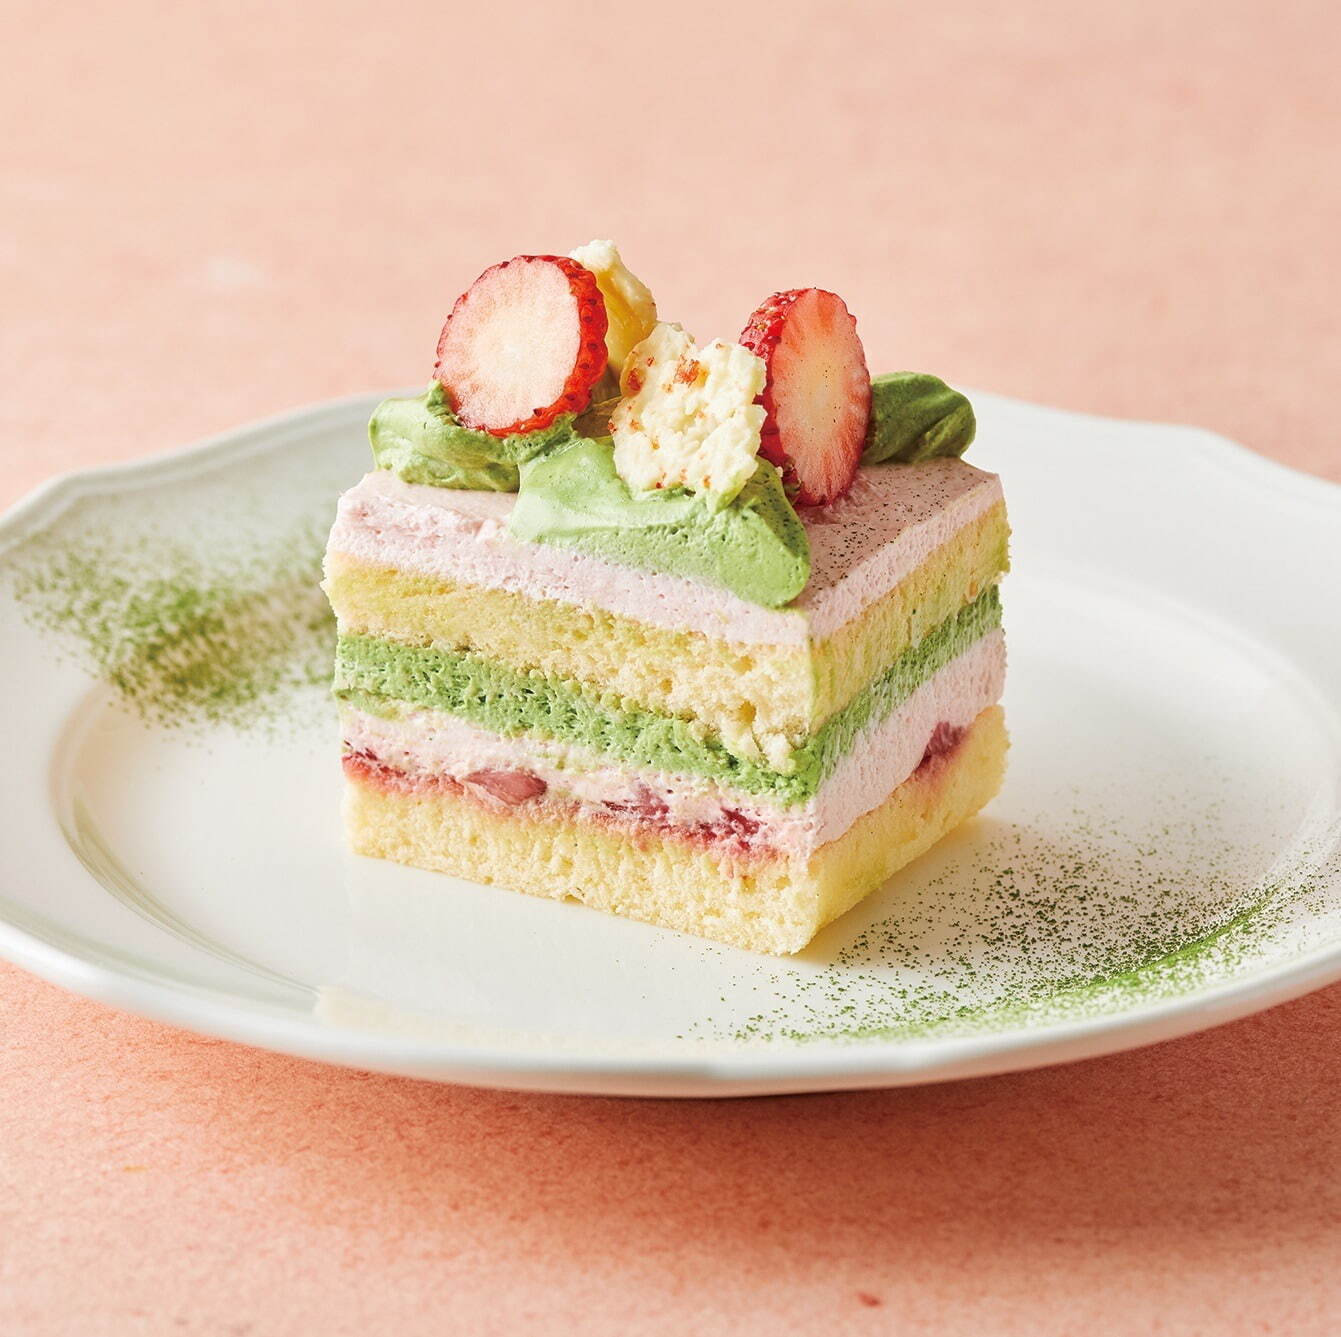 「抹茶と苺のショートケーキ」900円